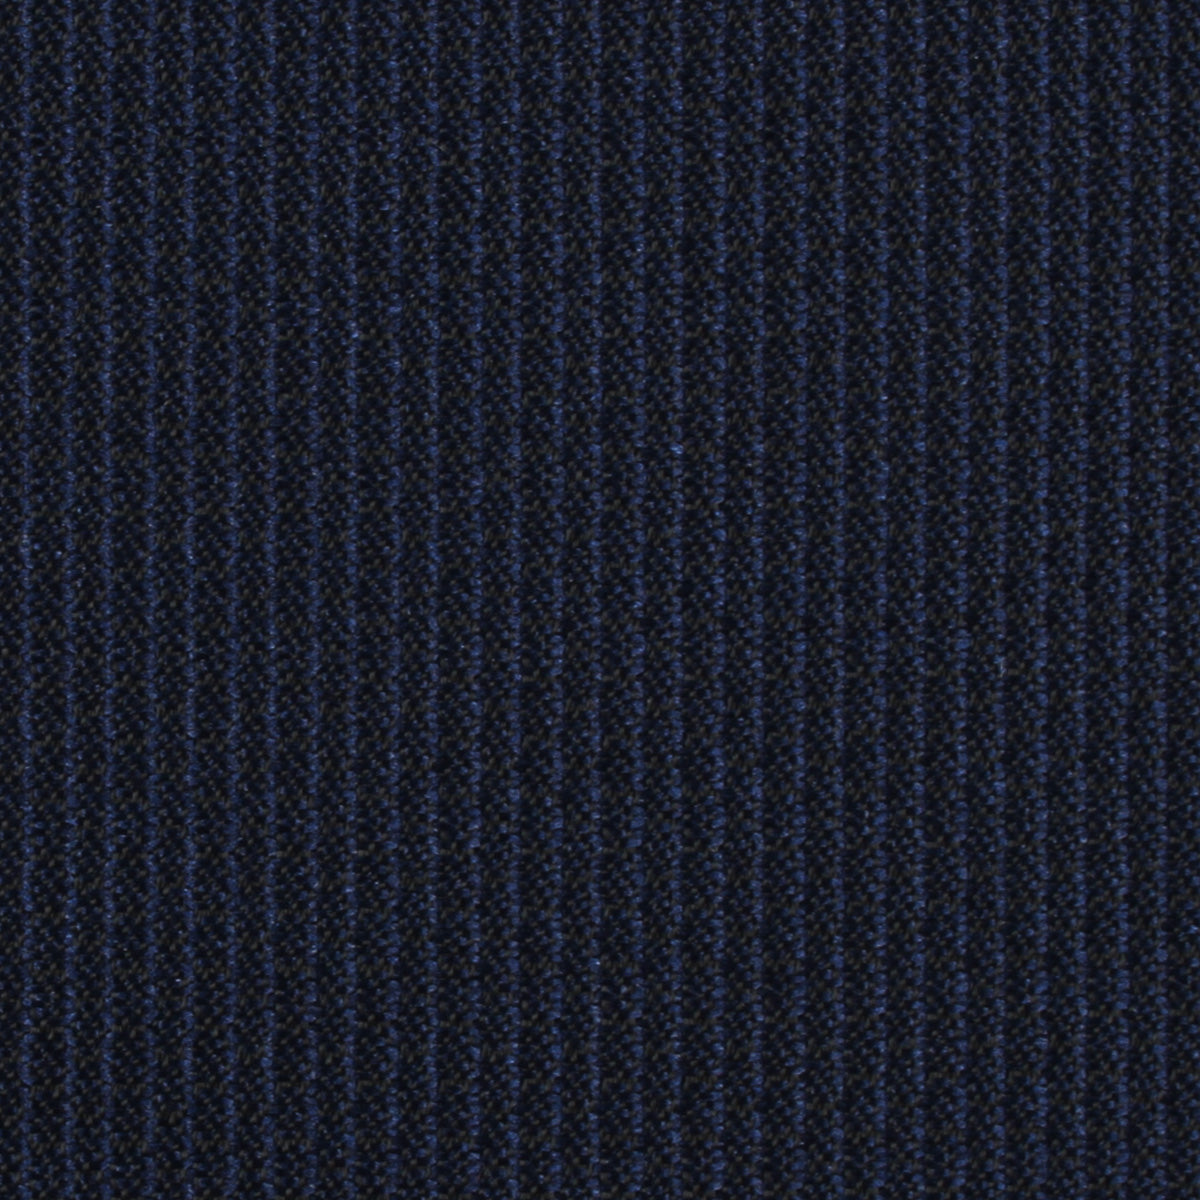 Navy Blue Weave Necktie Fabric